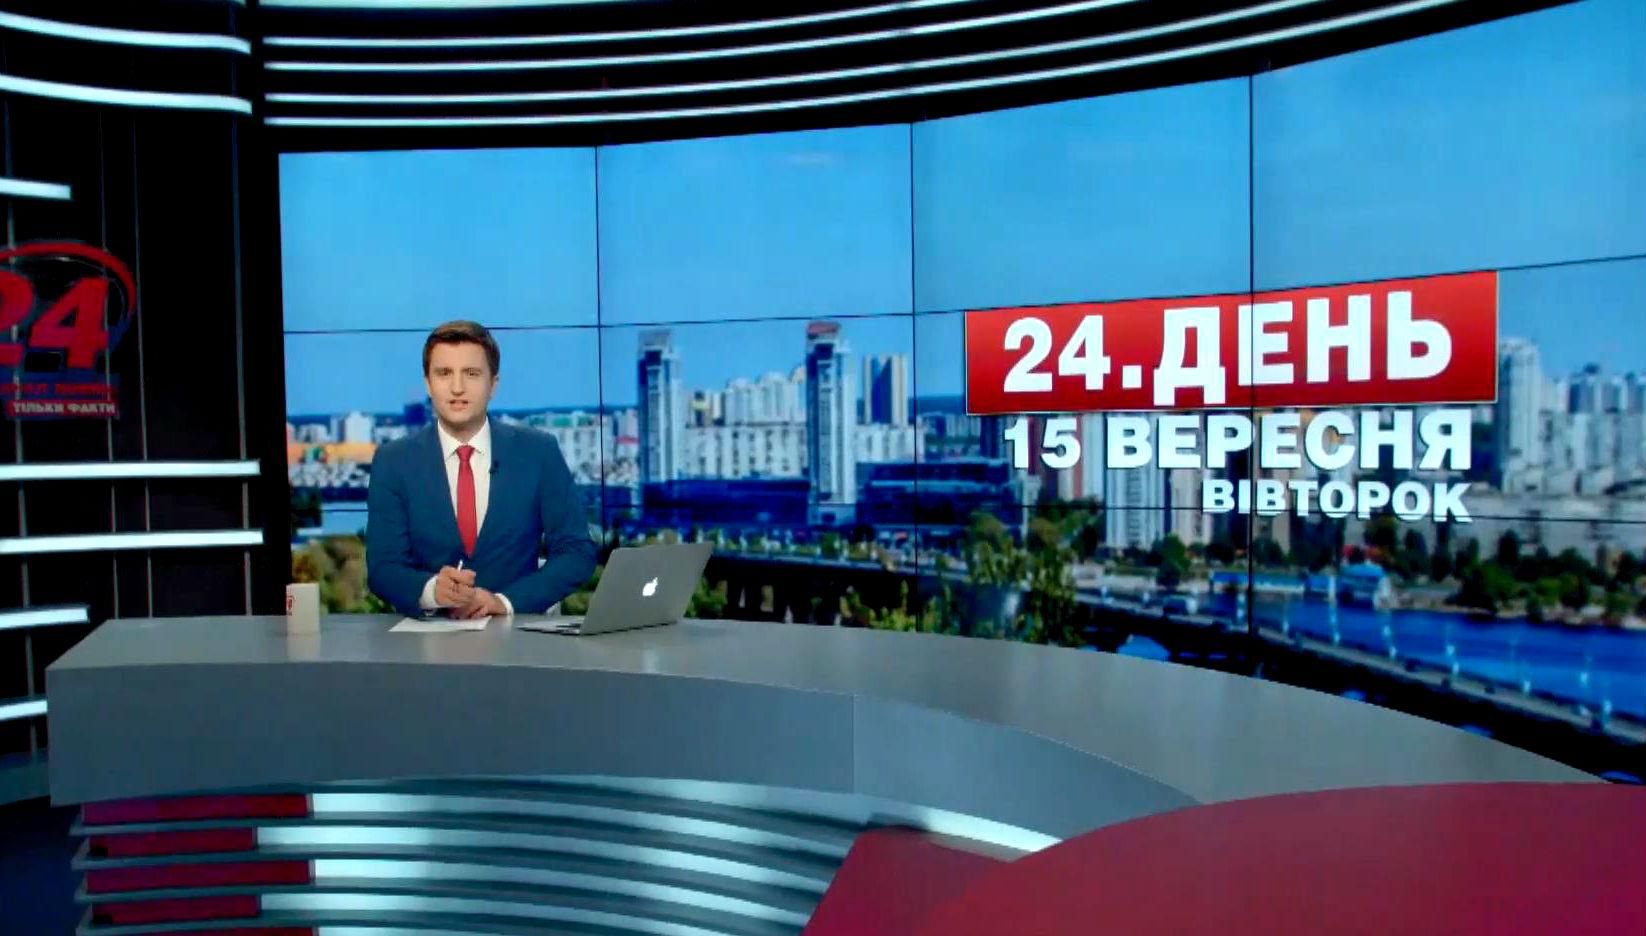 Выпуск новостей 15 сентября по состоянию на 12:00 - 15 сентября 2015 - Телеканал новин 24